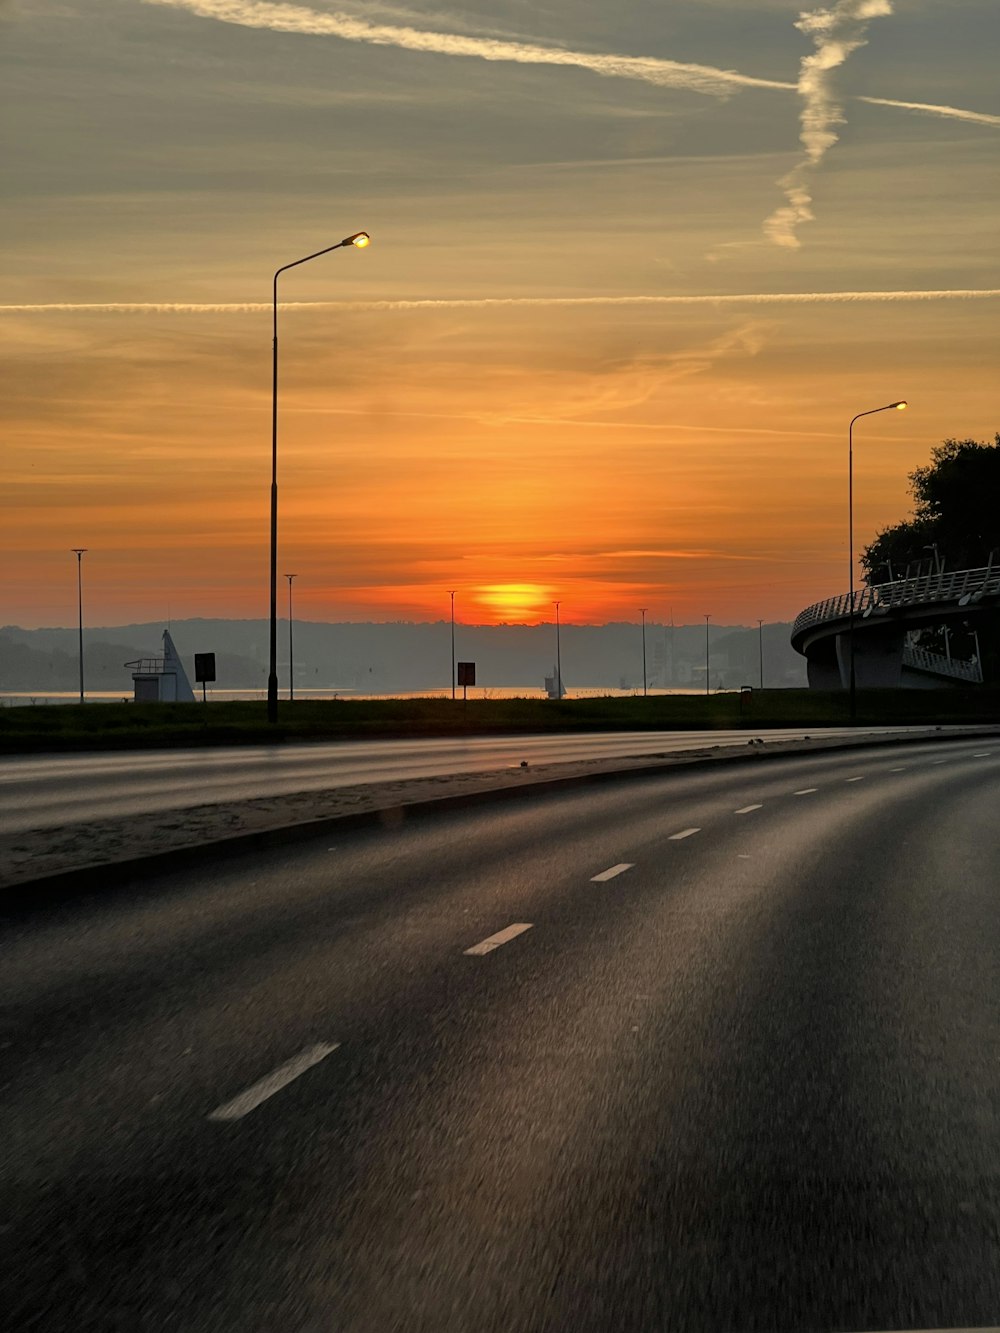 El sol se está poniendo en el horizonte de una carretera